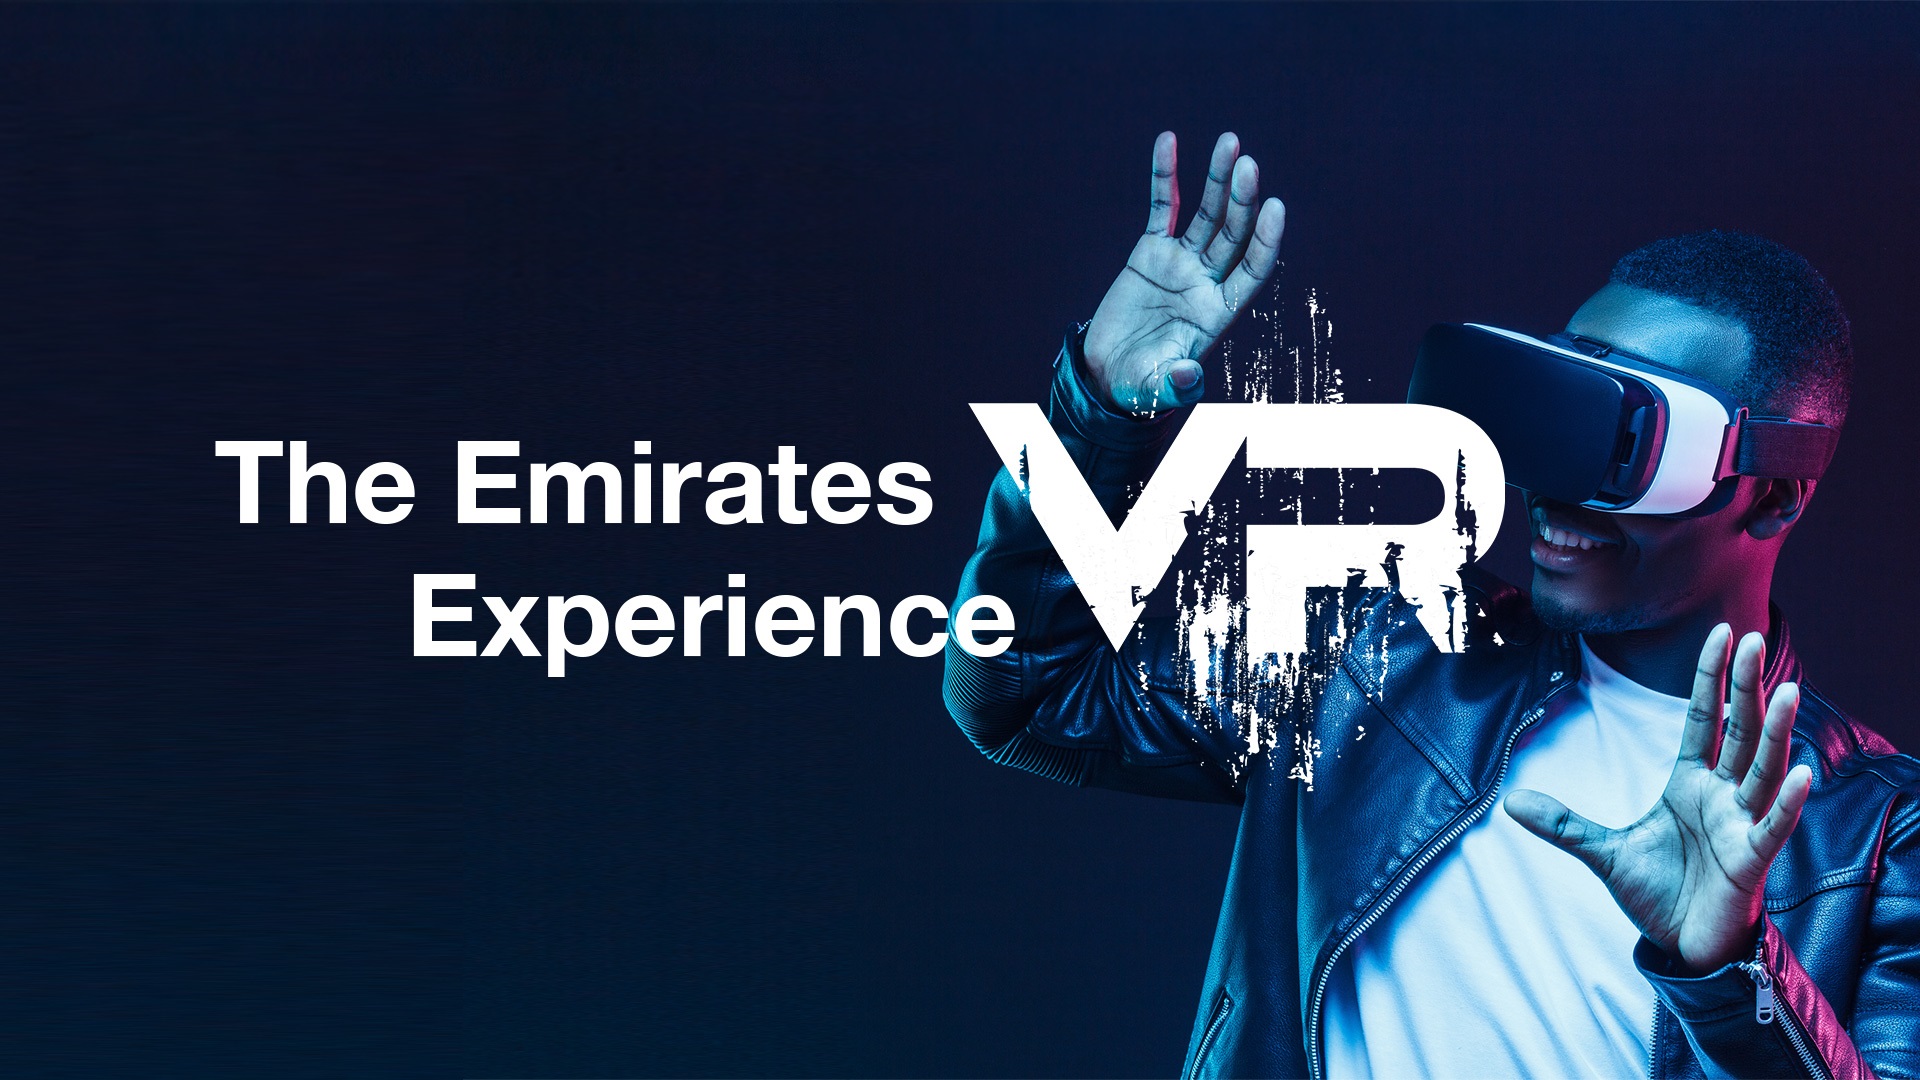 Η Emirates παρουσιάζει την πιο δημοφιλή πλατφόρμα VR στον κόσμο